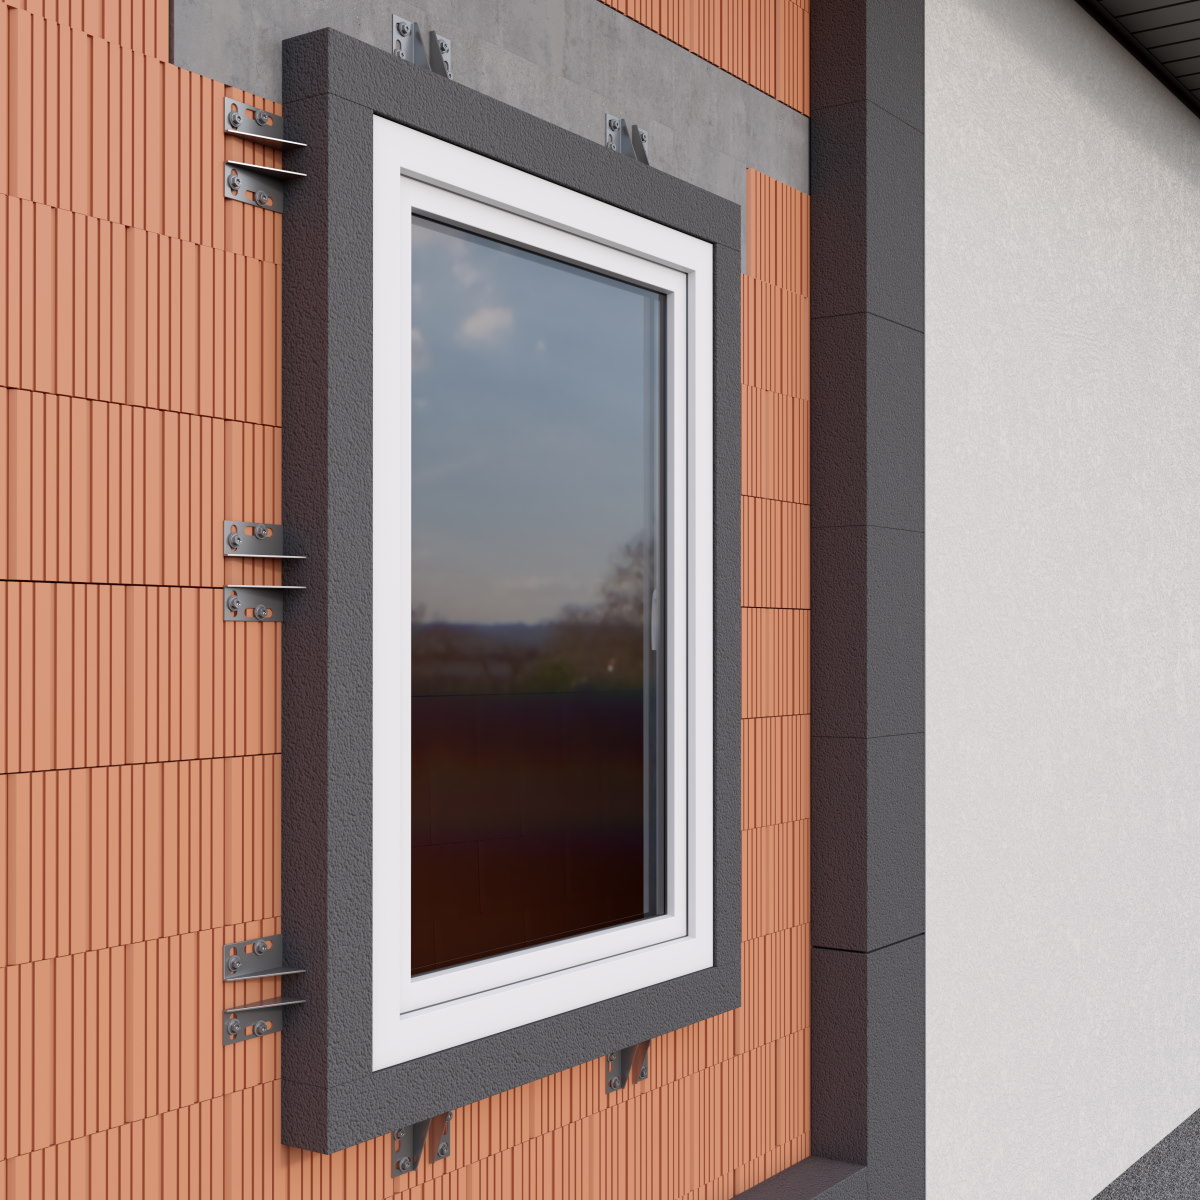 Klimas Wkręt-met zamocowania ramowe KPR-KPS-FAST montaż okna poza murem